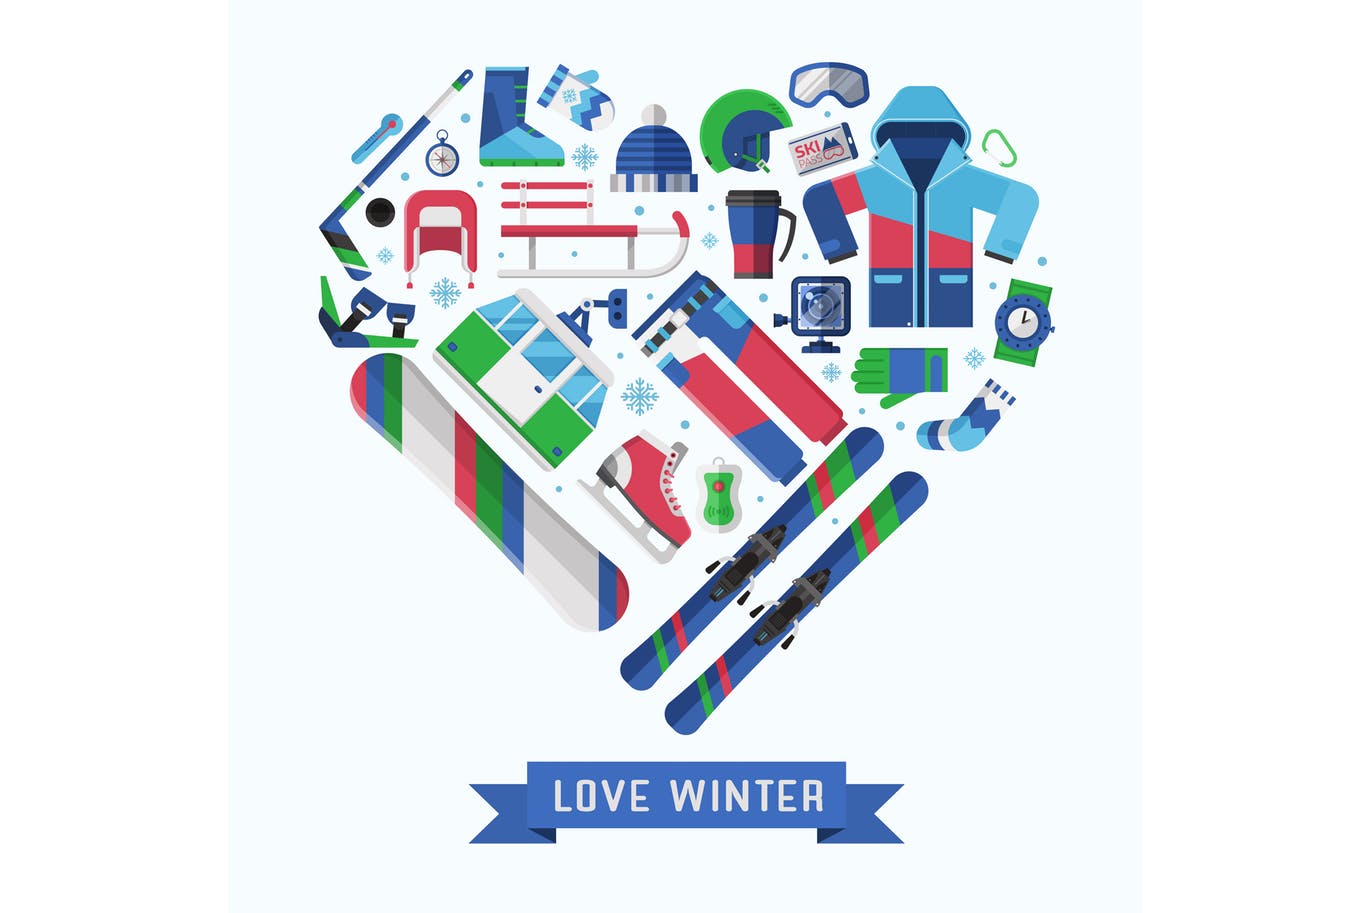 冬季运动主题扁平设计风格心形矢量插画第一素材精选 Love Winter Sports Heart Print插图